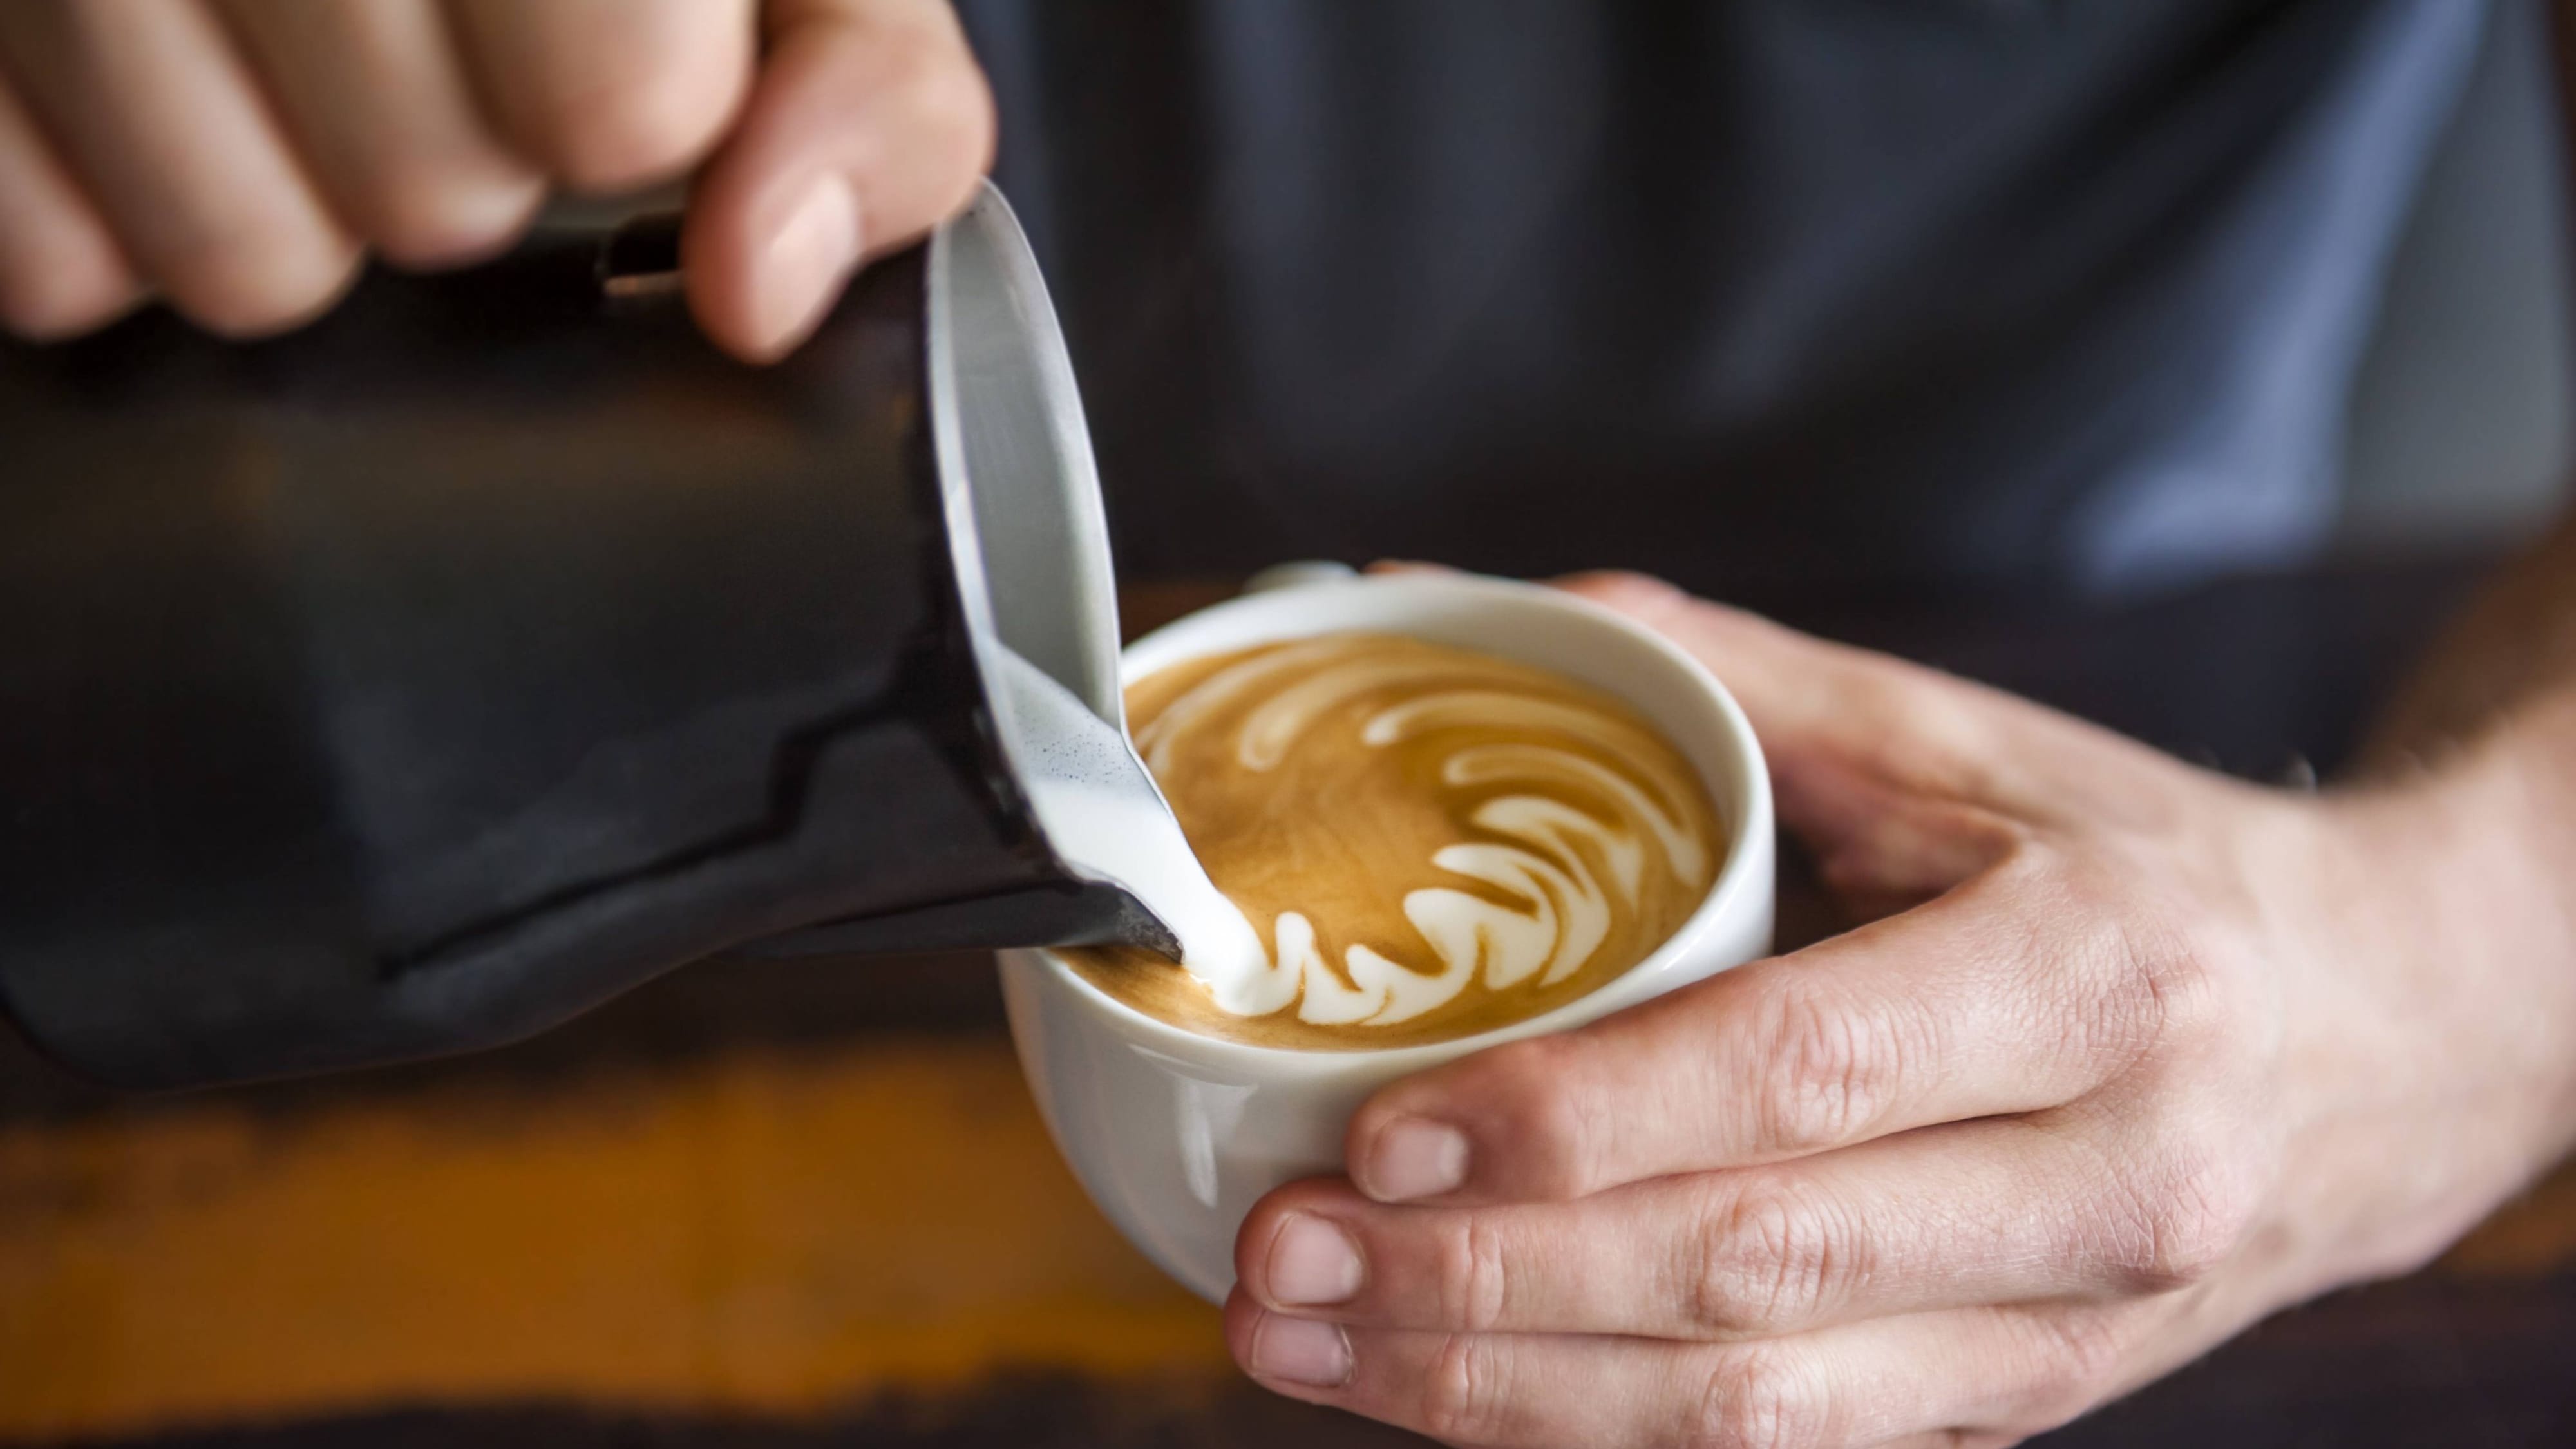 Kaffee wird teurer: Tchibo erhöht Preise – Experte erwartet Anstieg